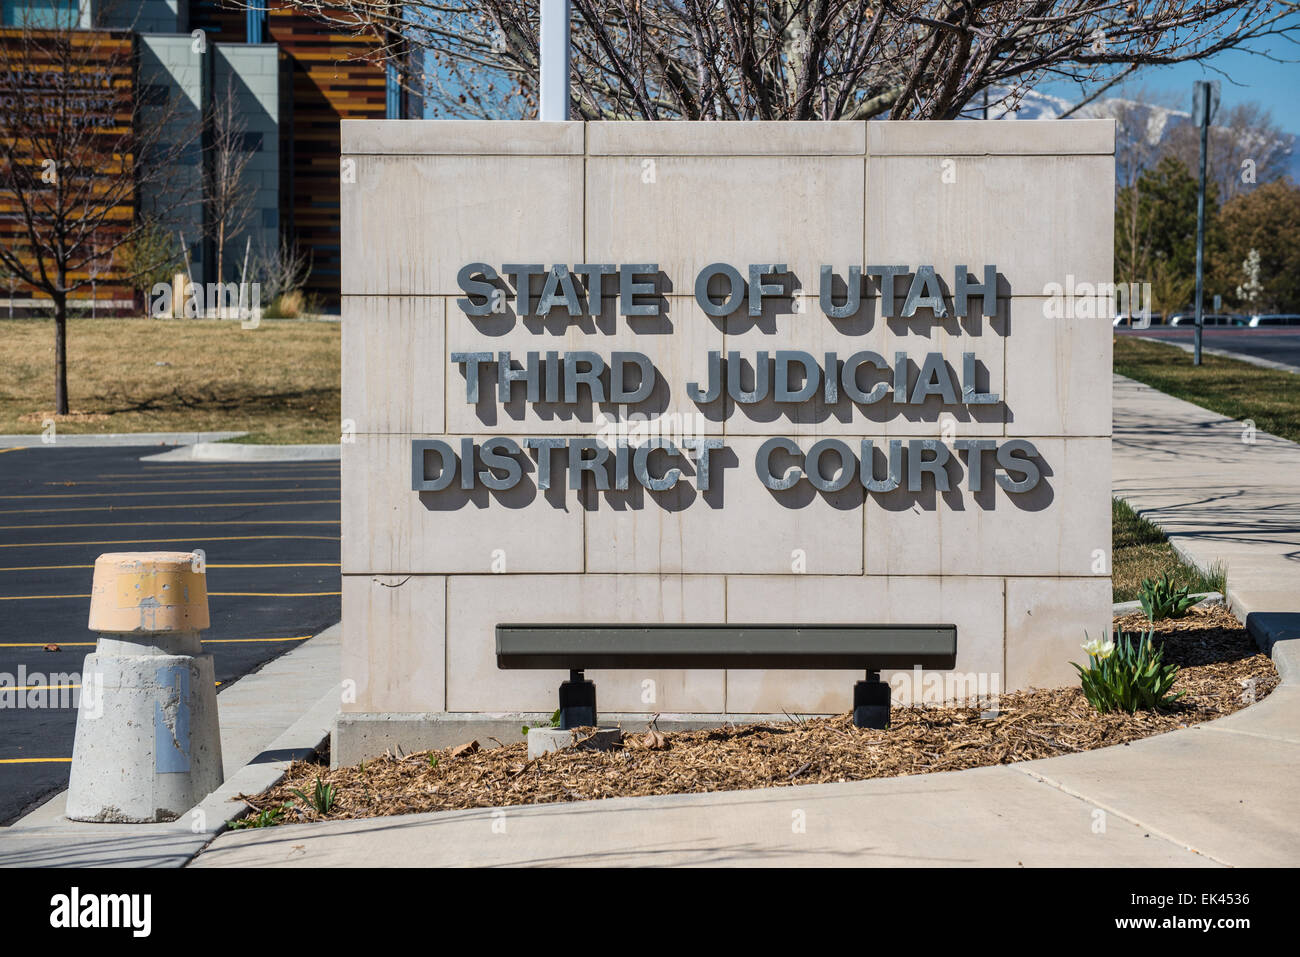 État de l'Utah troisième district judiciaire Tribunaux Sign Banque D'Images